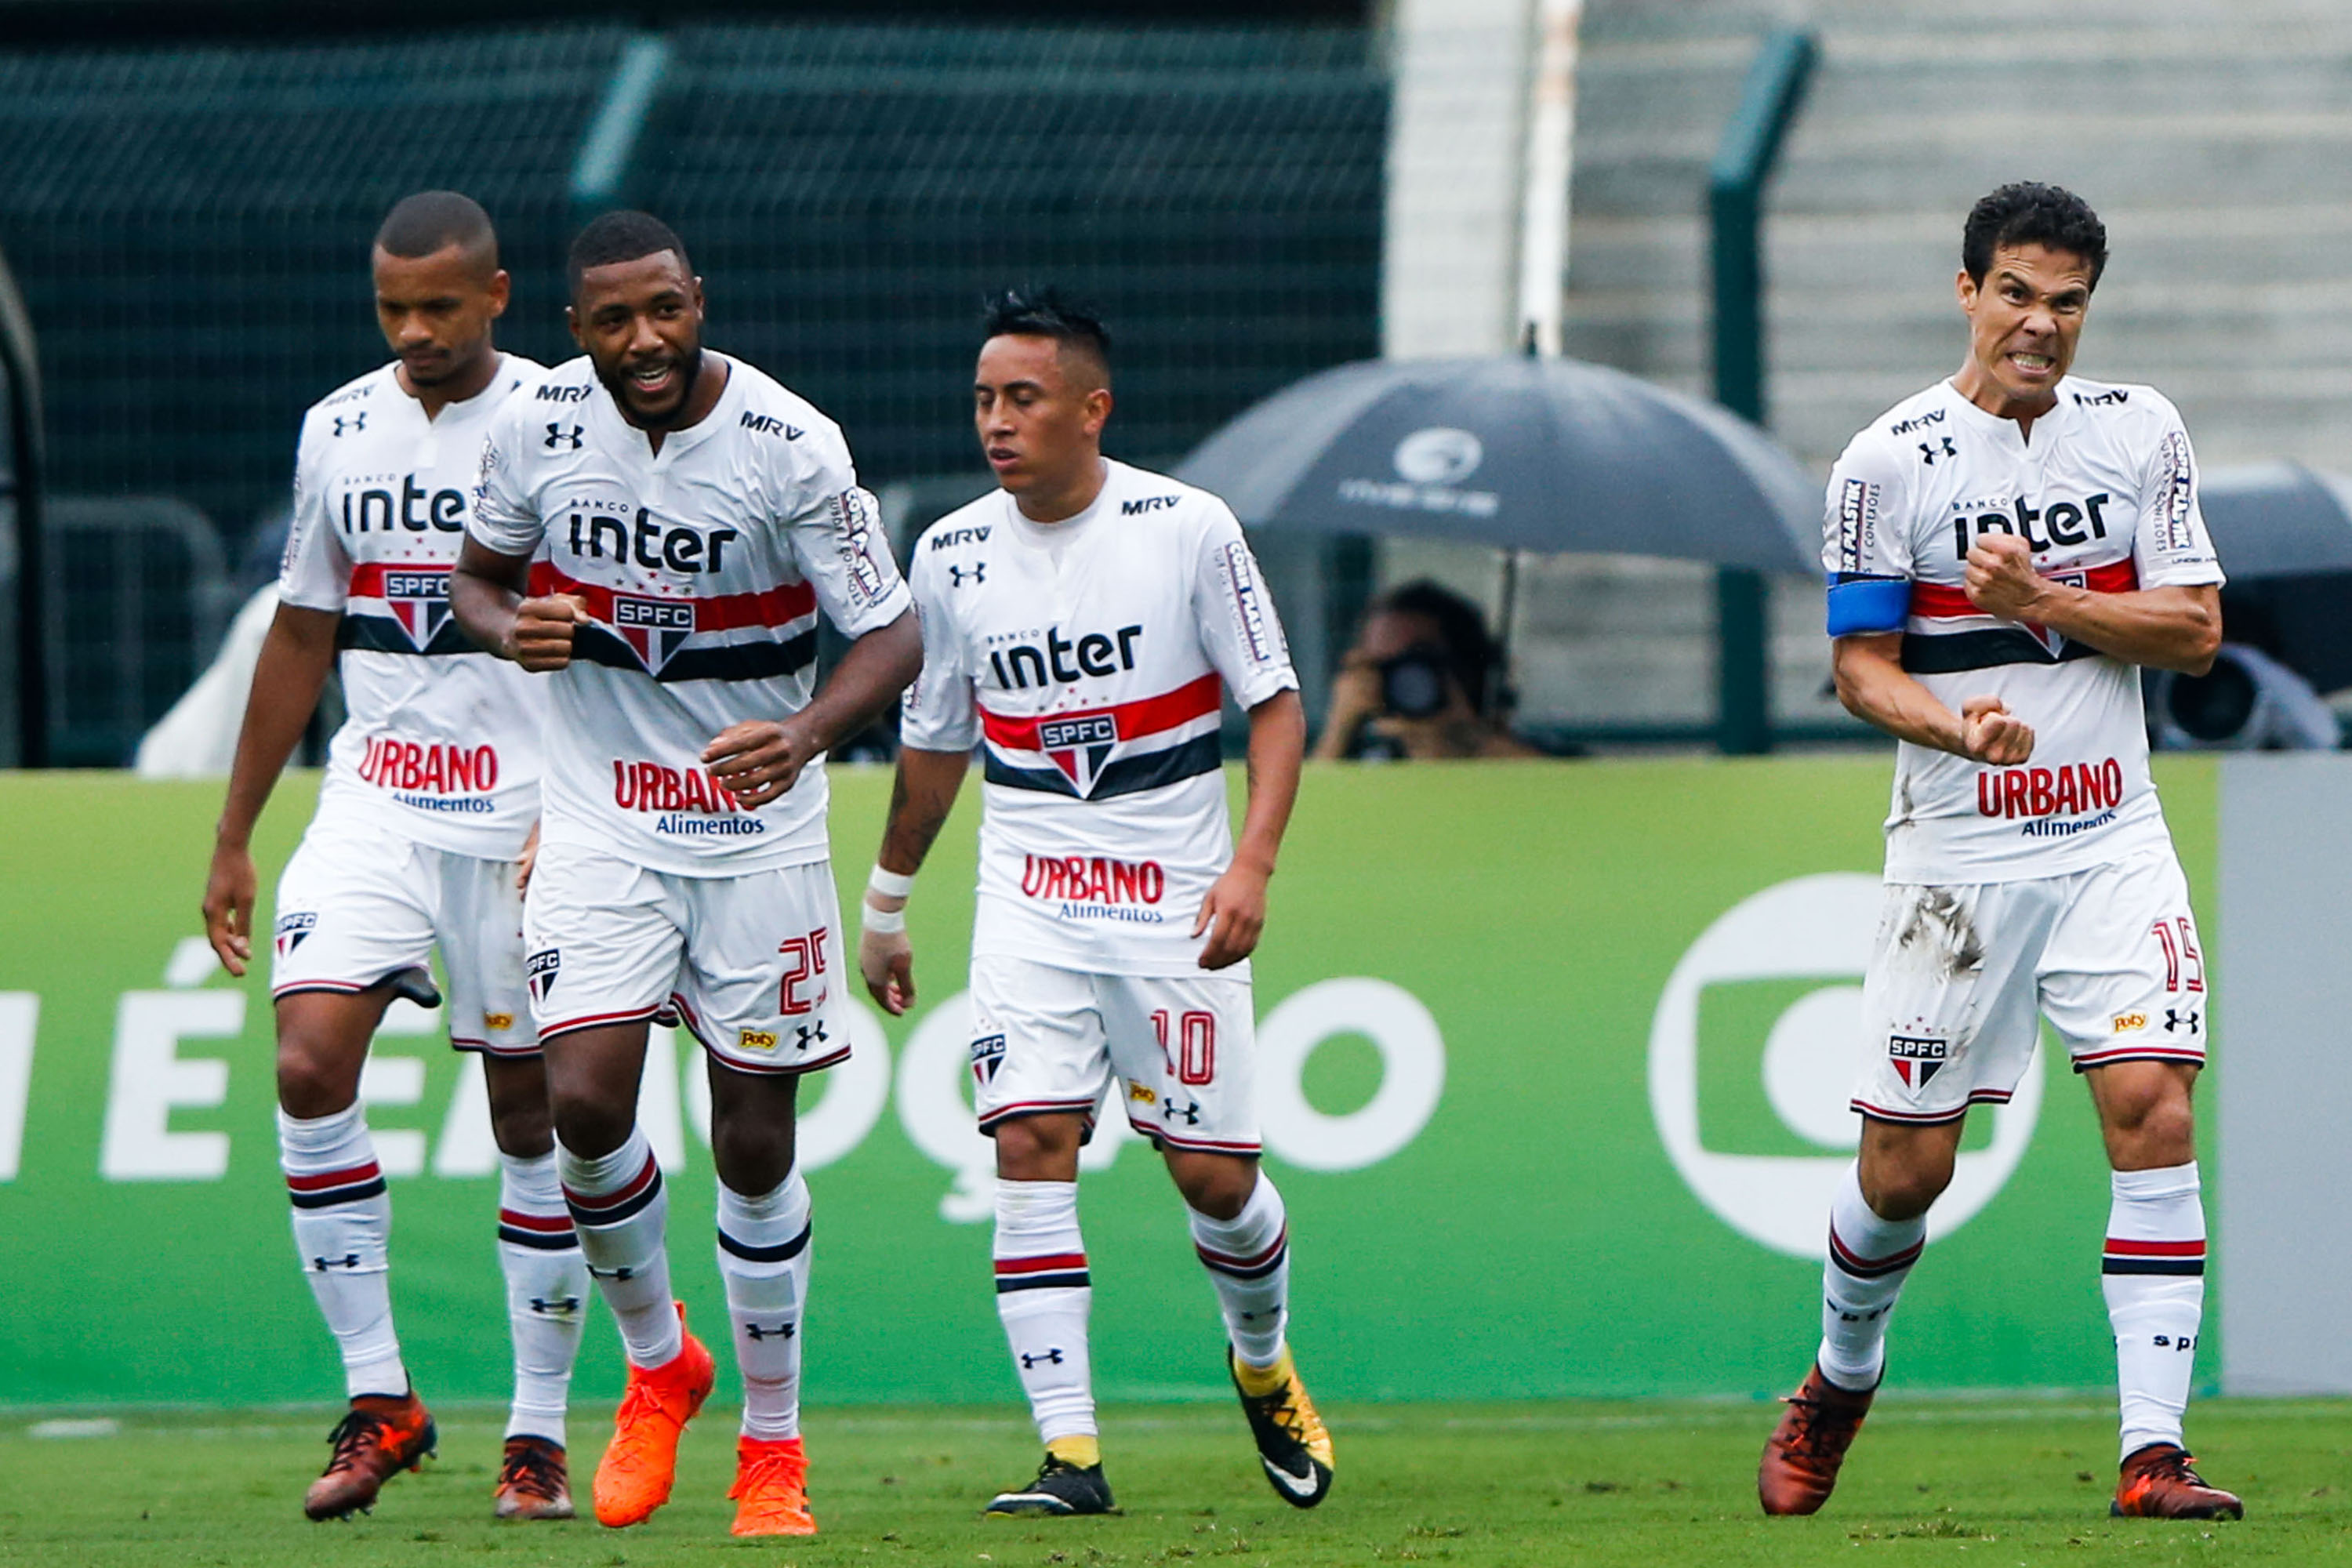 Com gol de mão, São Paulo derrota Flamengo no Pacaembu | VEJA